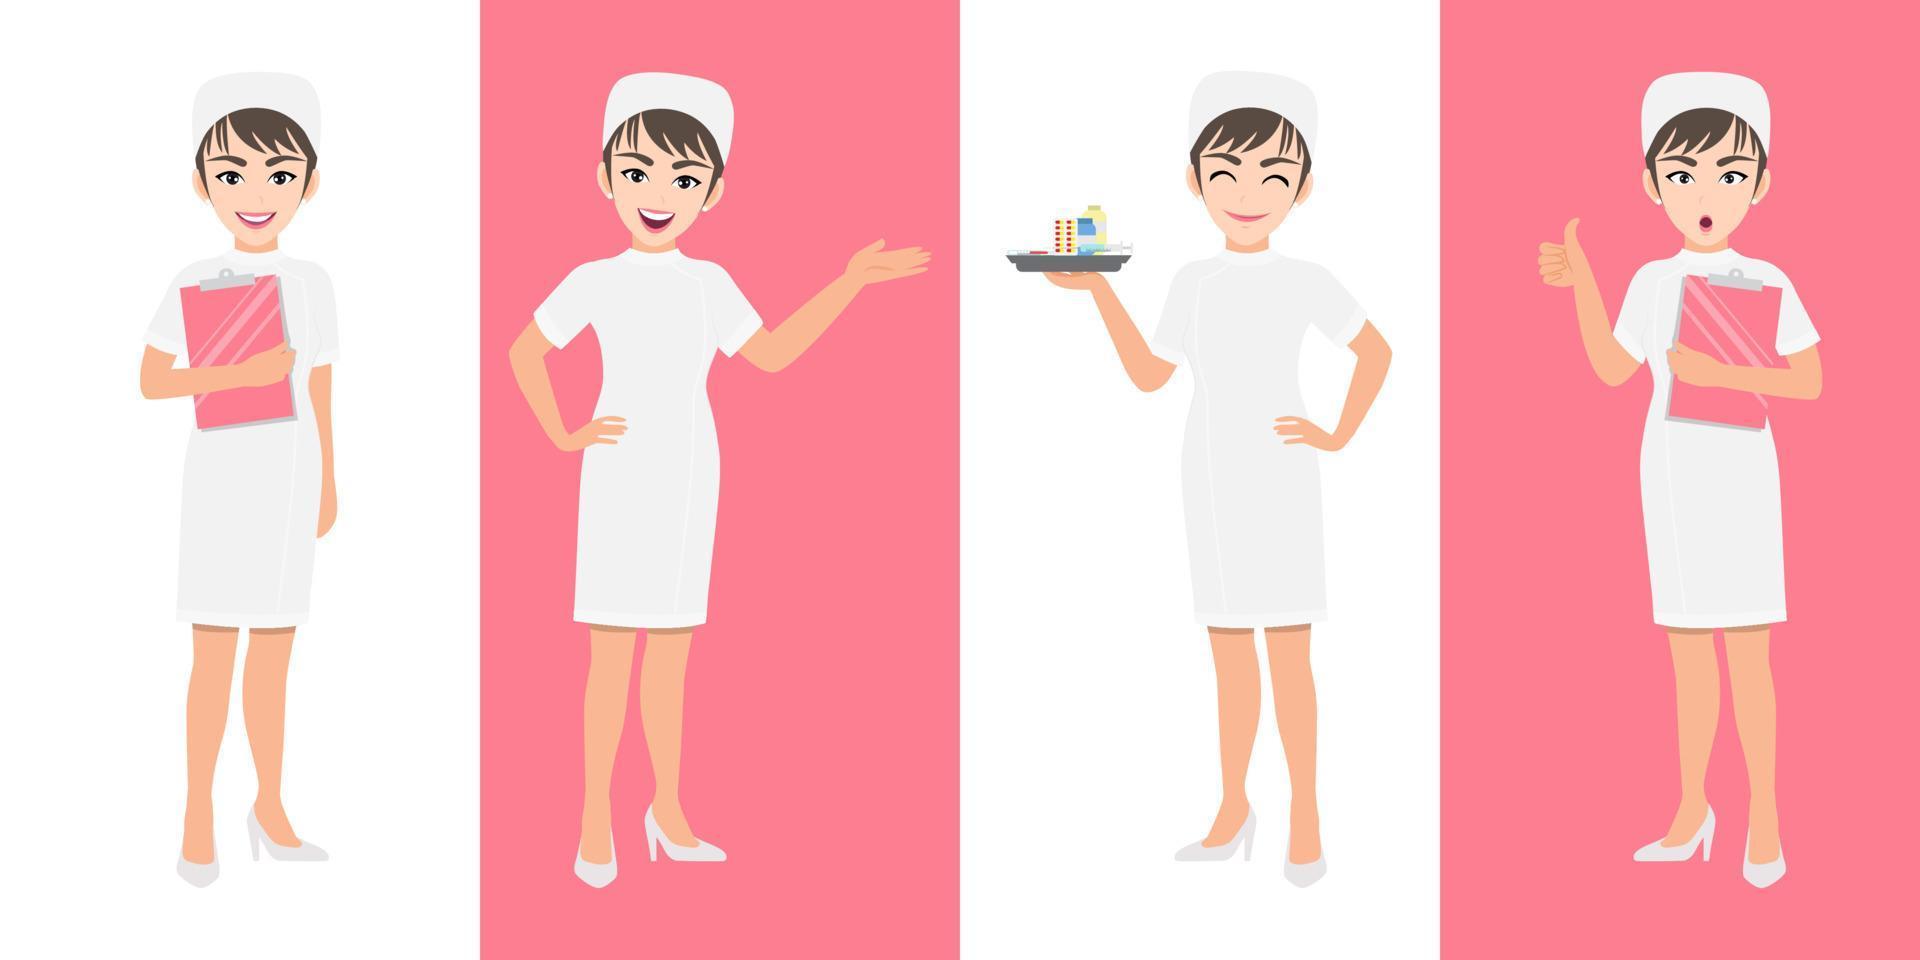 conjunto de personajes de dibujos animados de enfermera, enfermera linda en diferentes poses, trabajador médico o personal del hospital. icono plano de dibujos animados de enfermera en un vector de fondo blanco y rosa